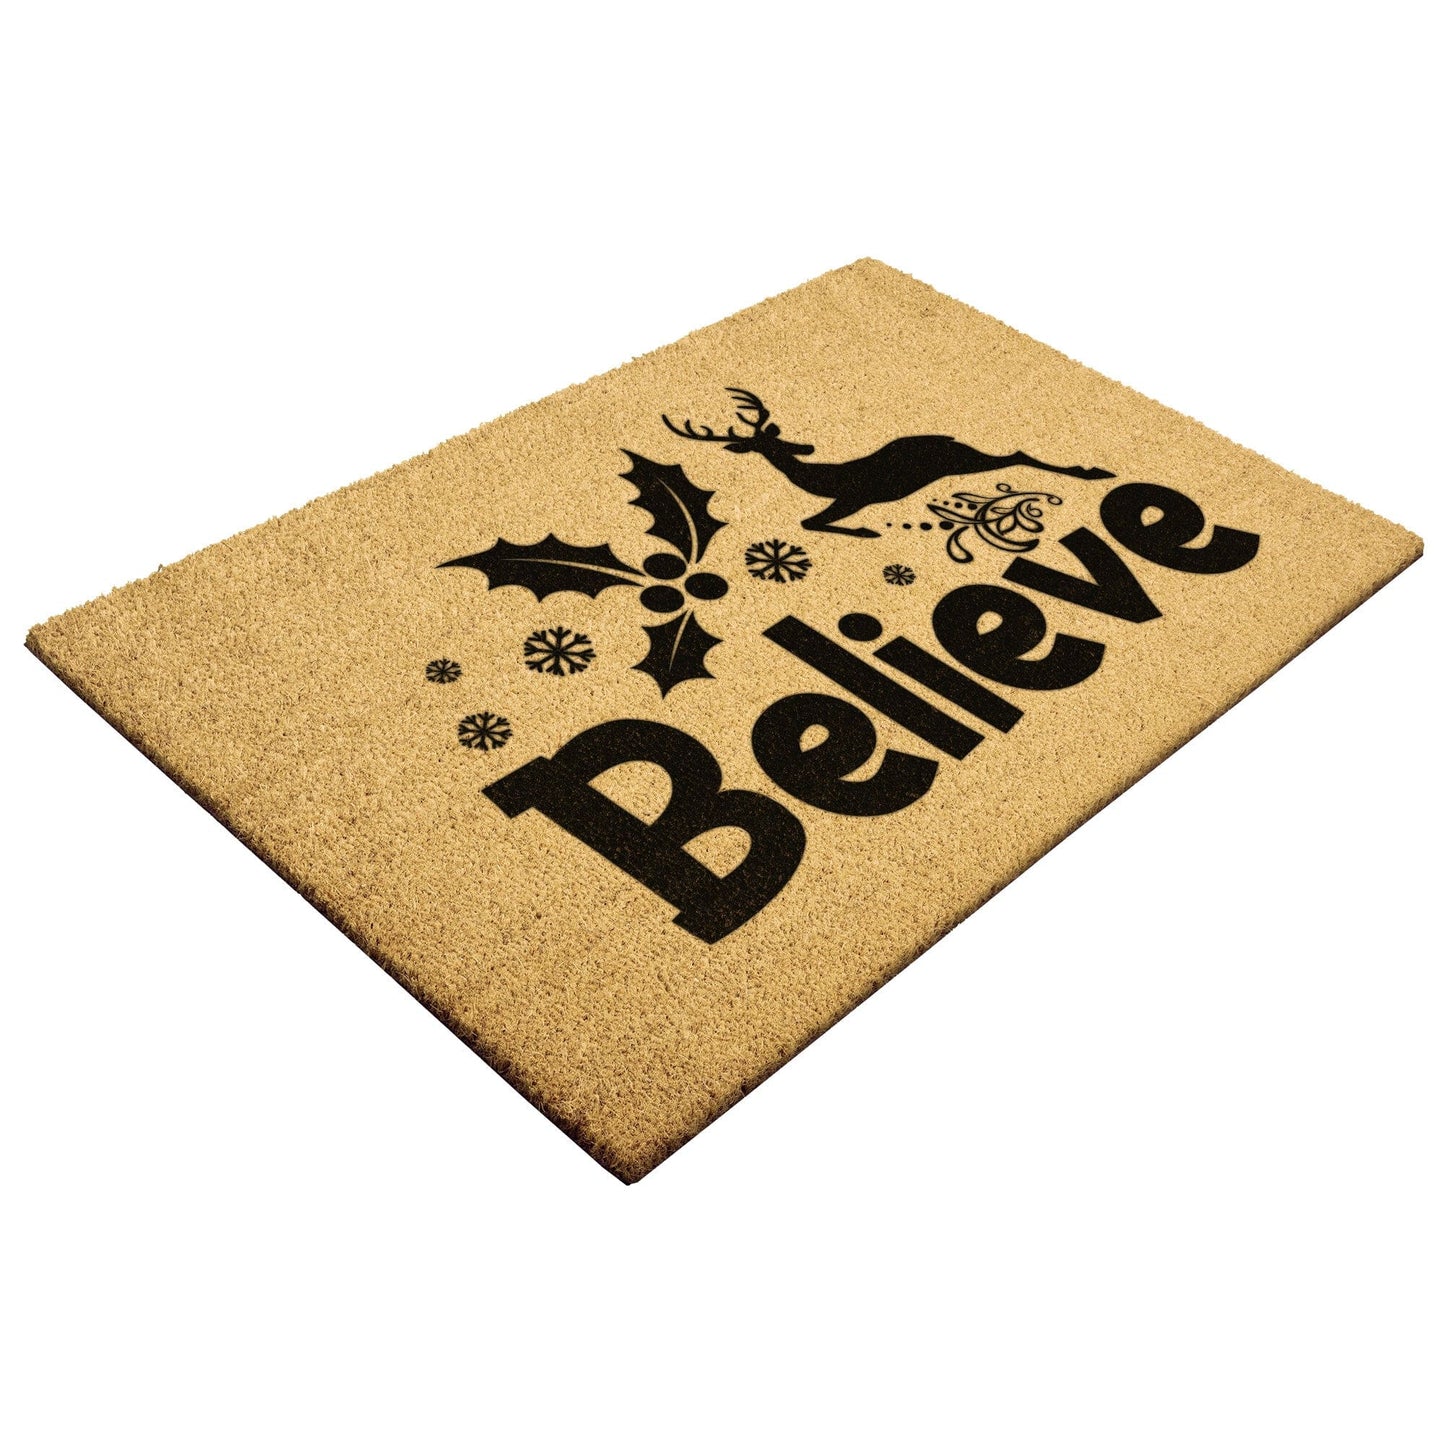 Believe in Christmas Outdoor Mat